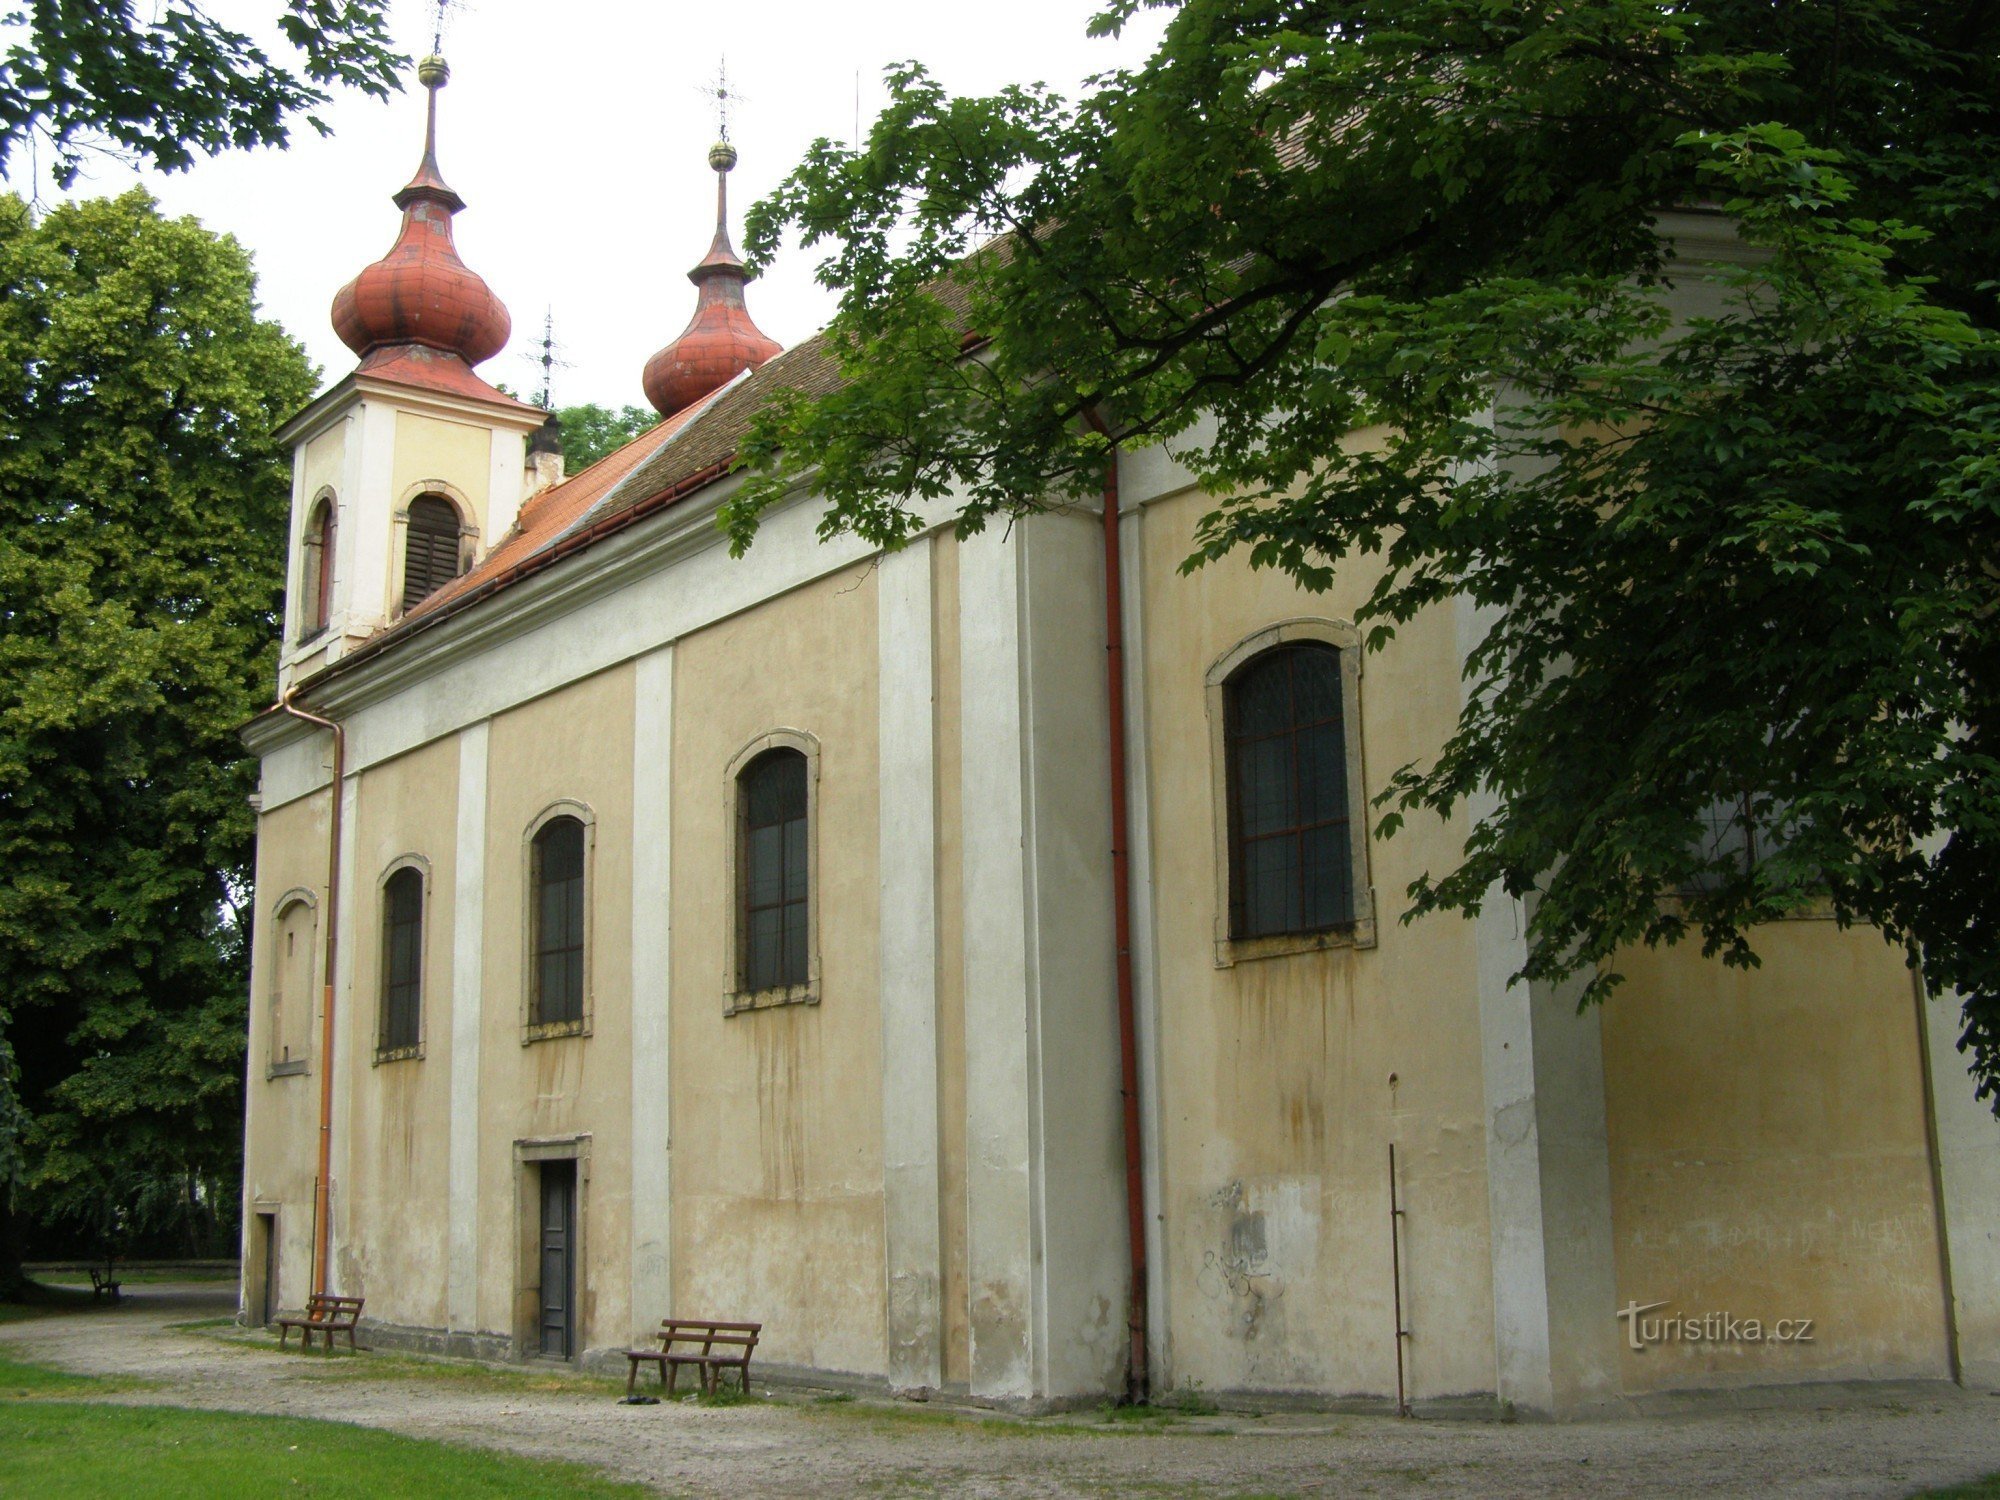 Nový Bydžov - Cerkev Svete Trojice